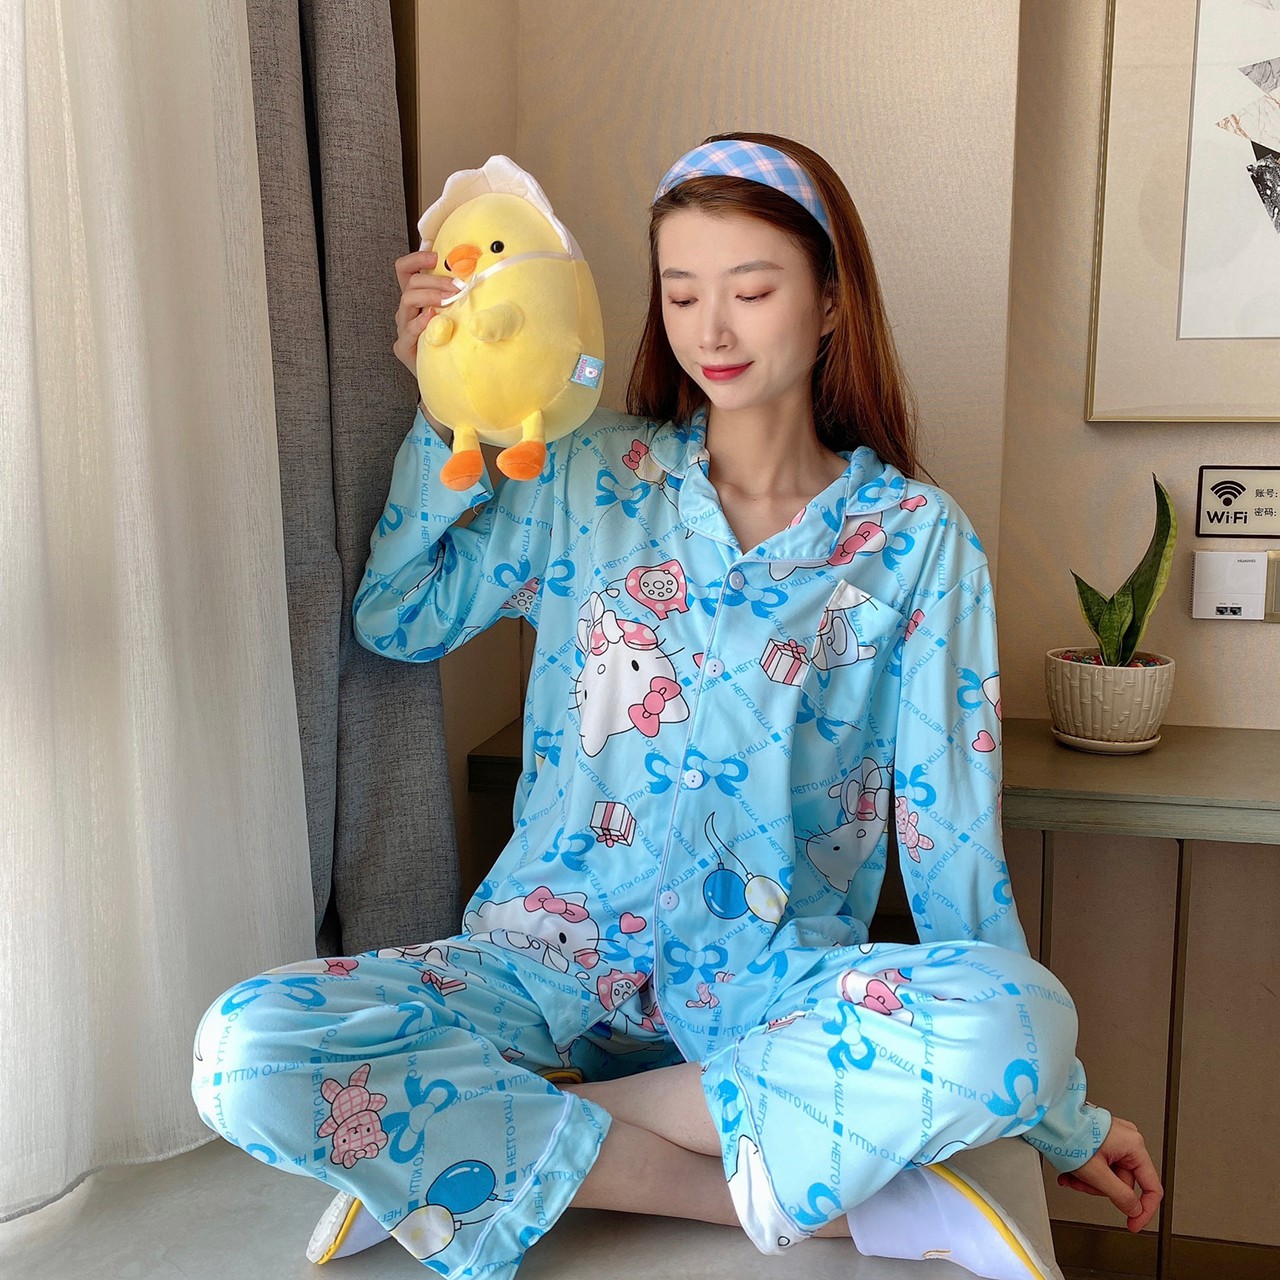 ?? Freesize E ?? สาวใหญ่เชิญทางนี้ ชุดนอนผ้าซาติน ชุดนอนสไตล์เกาหลี ชุดนอนบิ๊กไซส์ สินค้าจริงสวยแบบในรูป